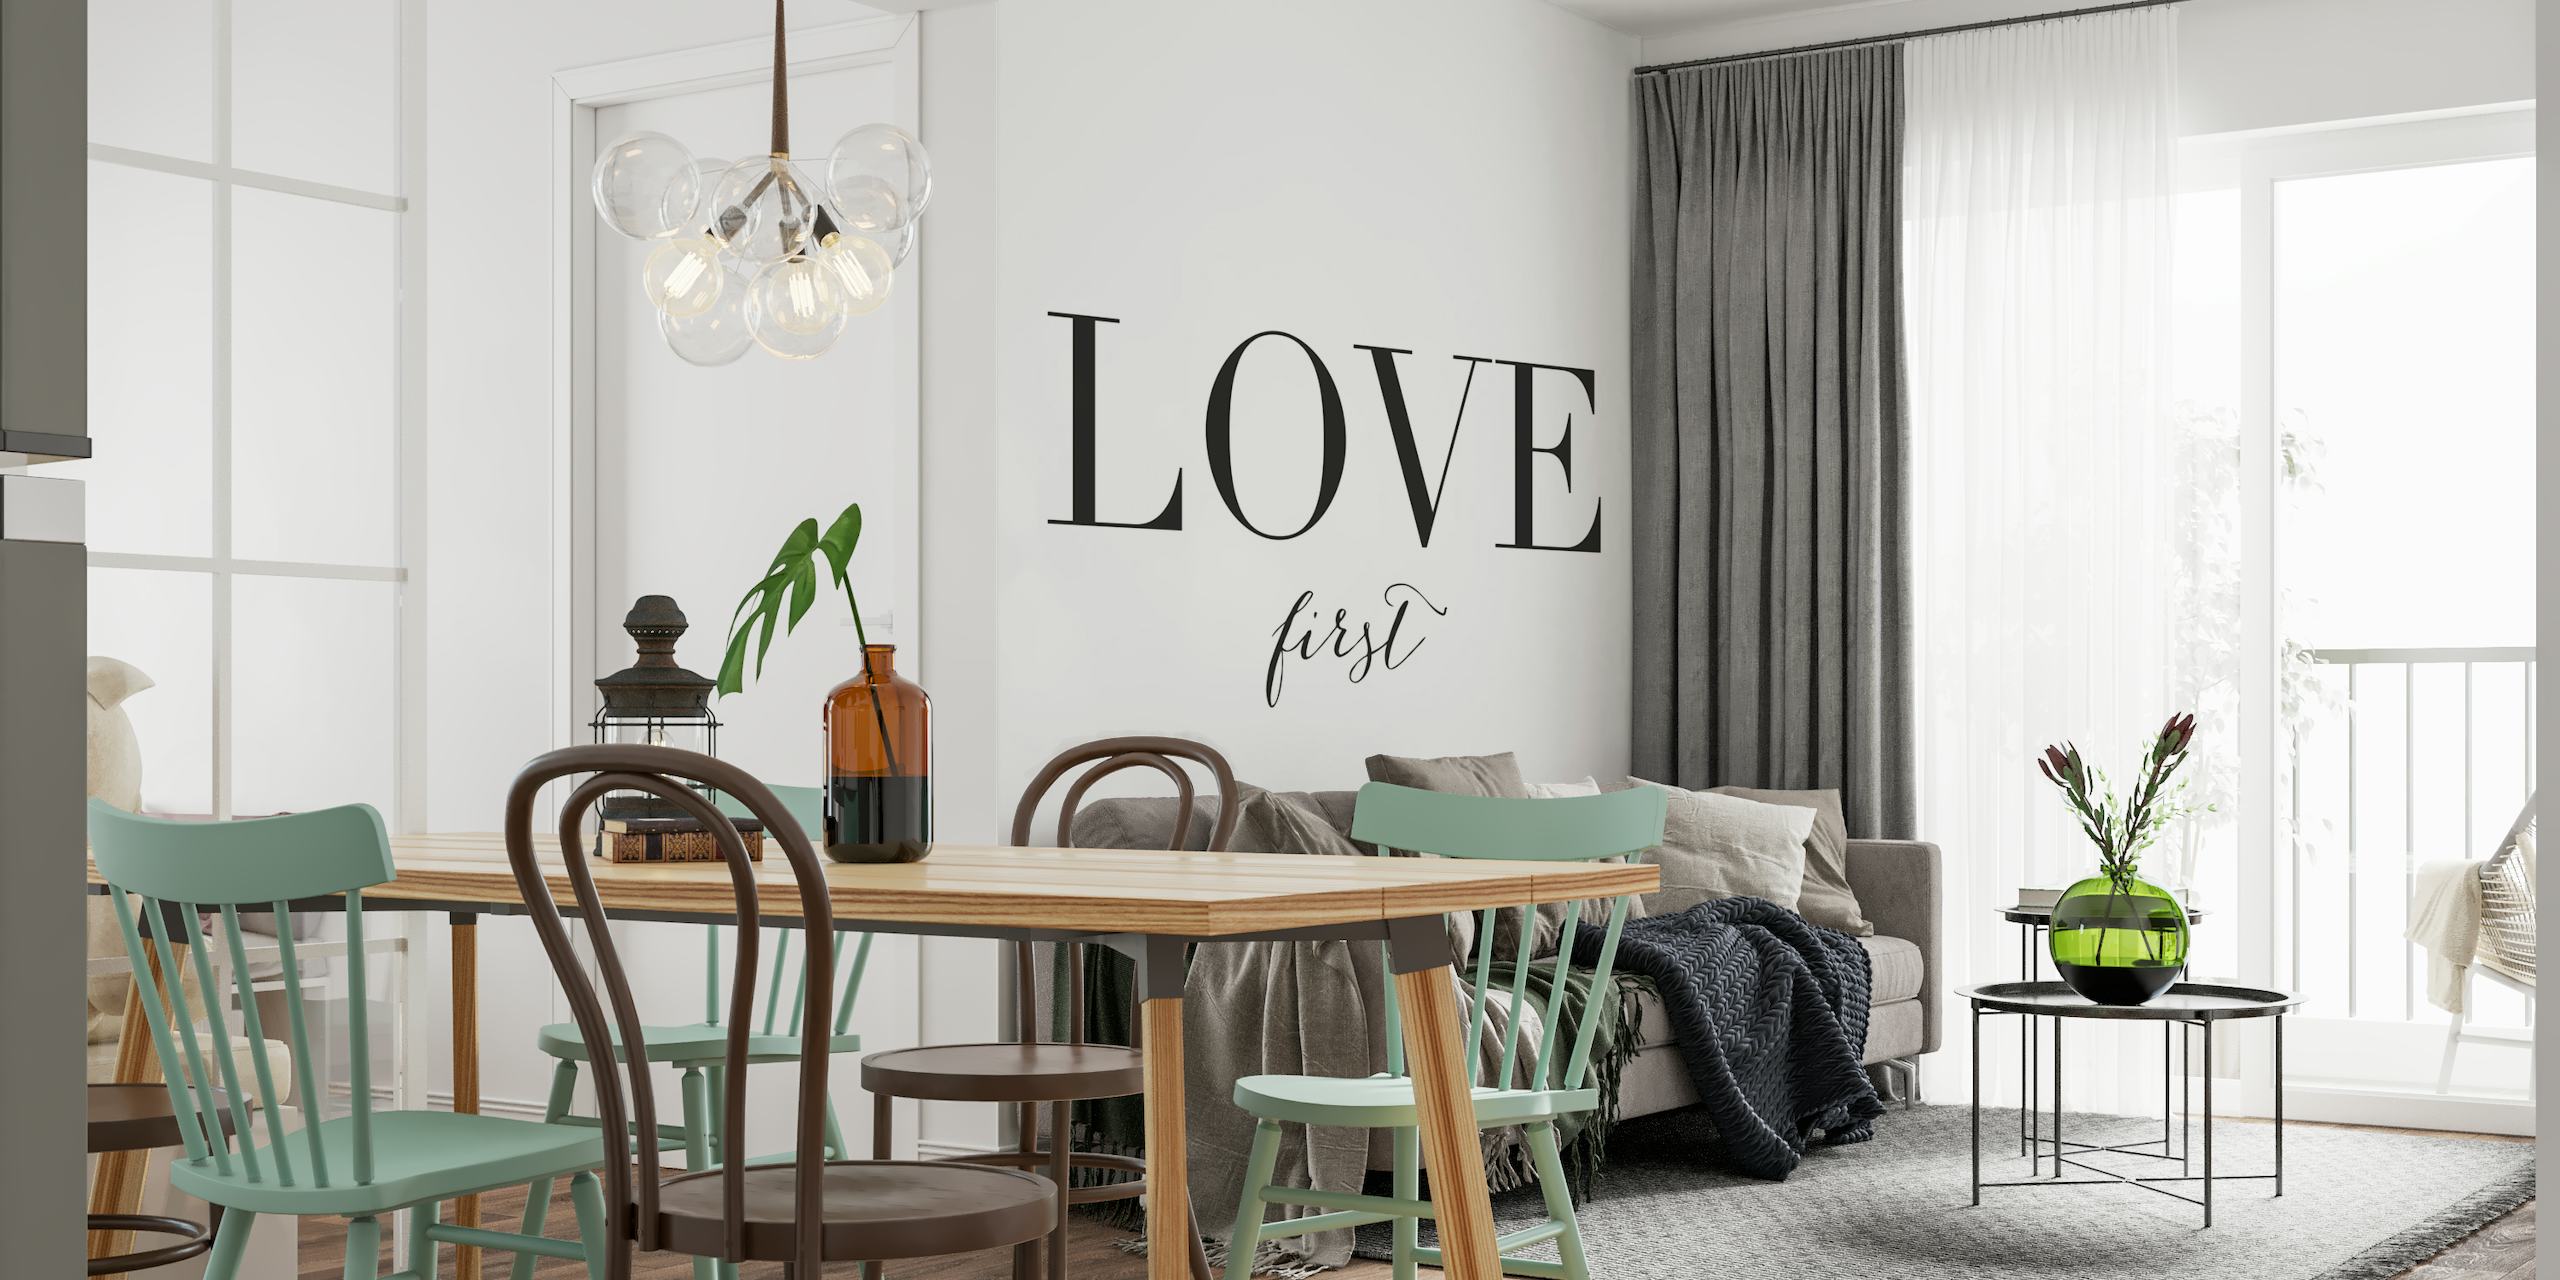 Love first wallpaper